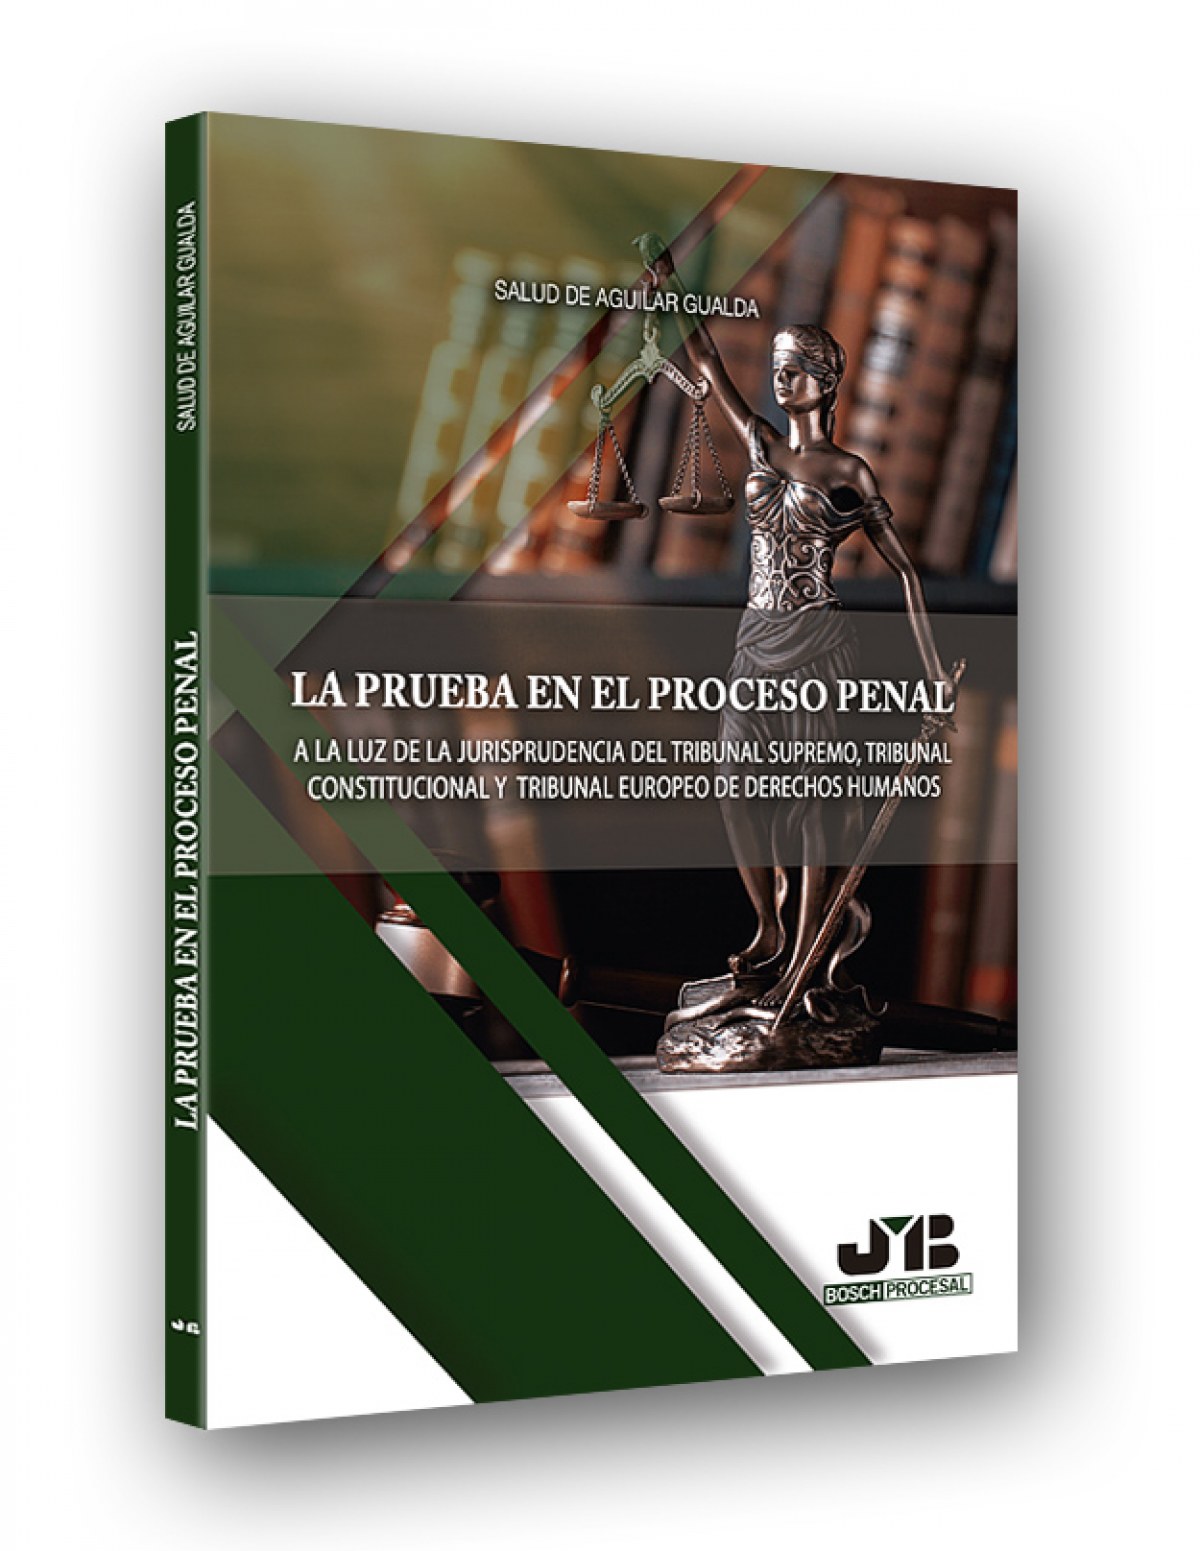 LA PRUEBA DEL PROCESO PENAL A la luz de la jurisprudencia del tribunal - Aguilar Gualda, Salud